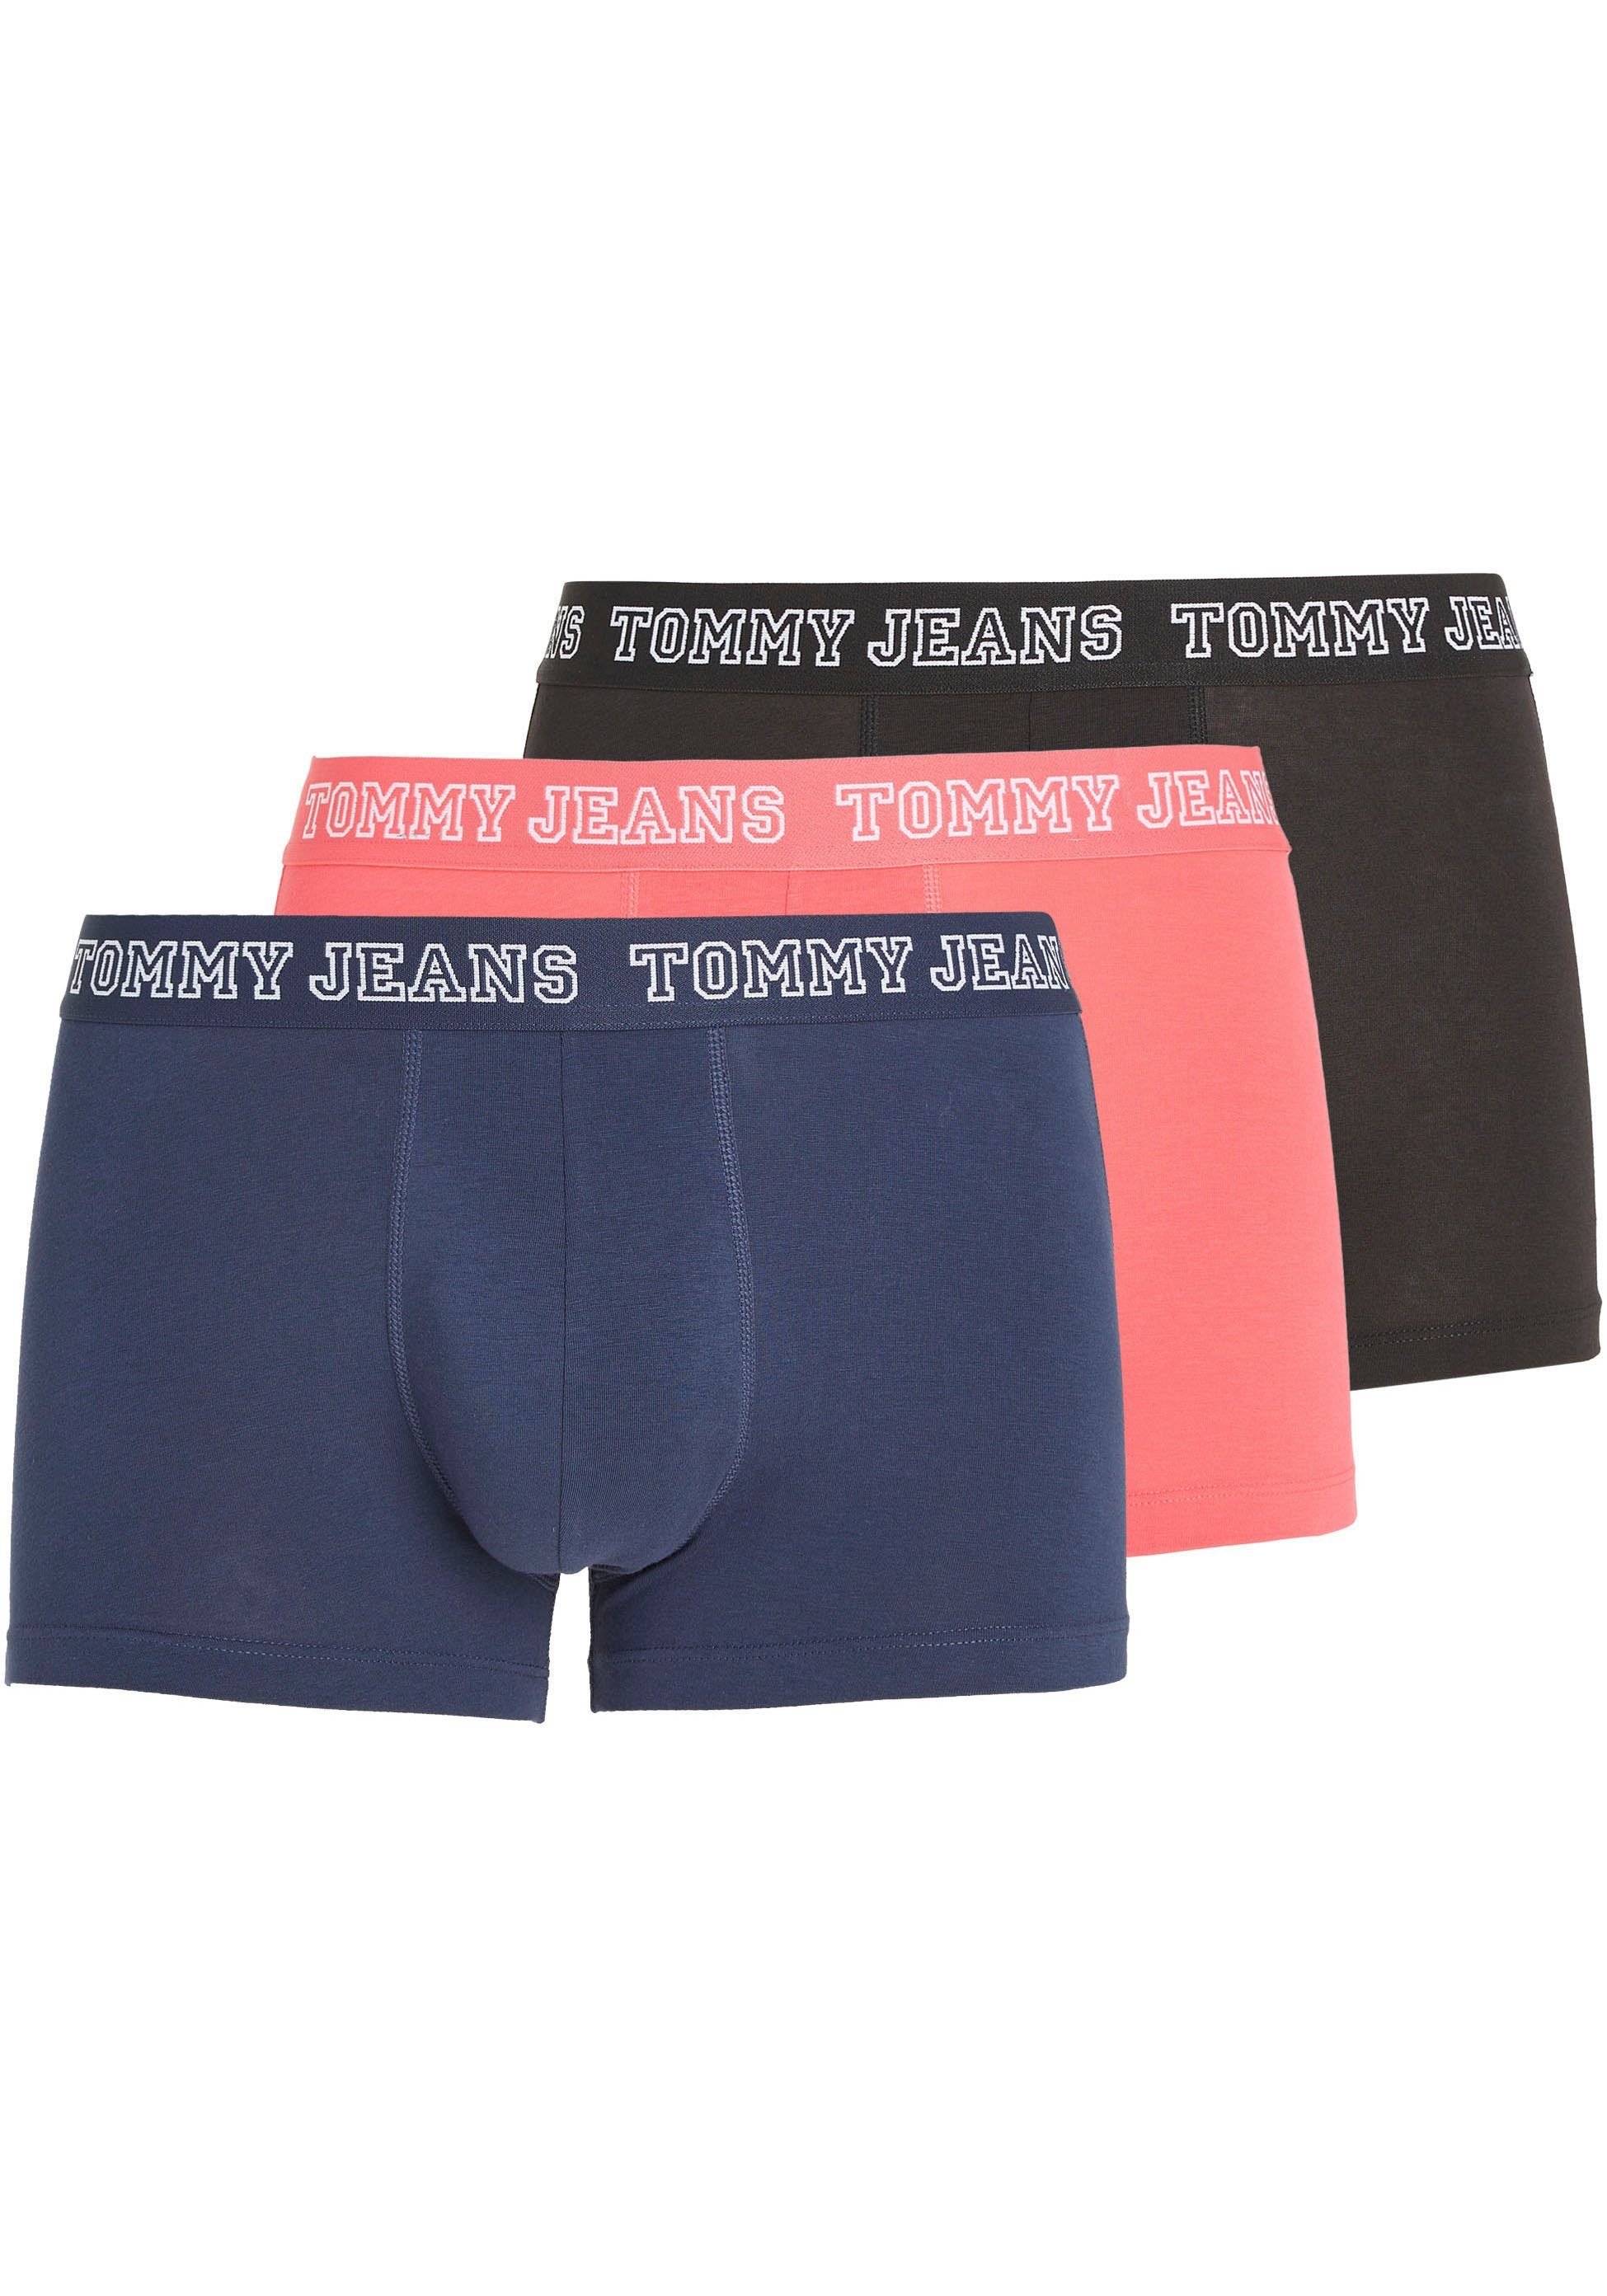 TRUNK Hilfiger 3er-Pack) Tommy Jeans mit Twilight/Laser-Pink/Black Tommy Underwear 3P DTM 3-St., Trunk (Packung, Logo-Elastikbund